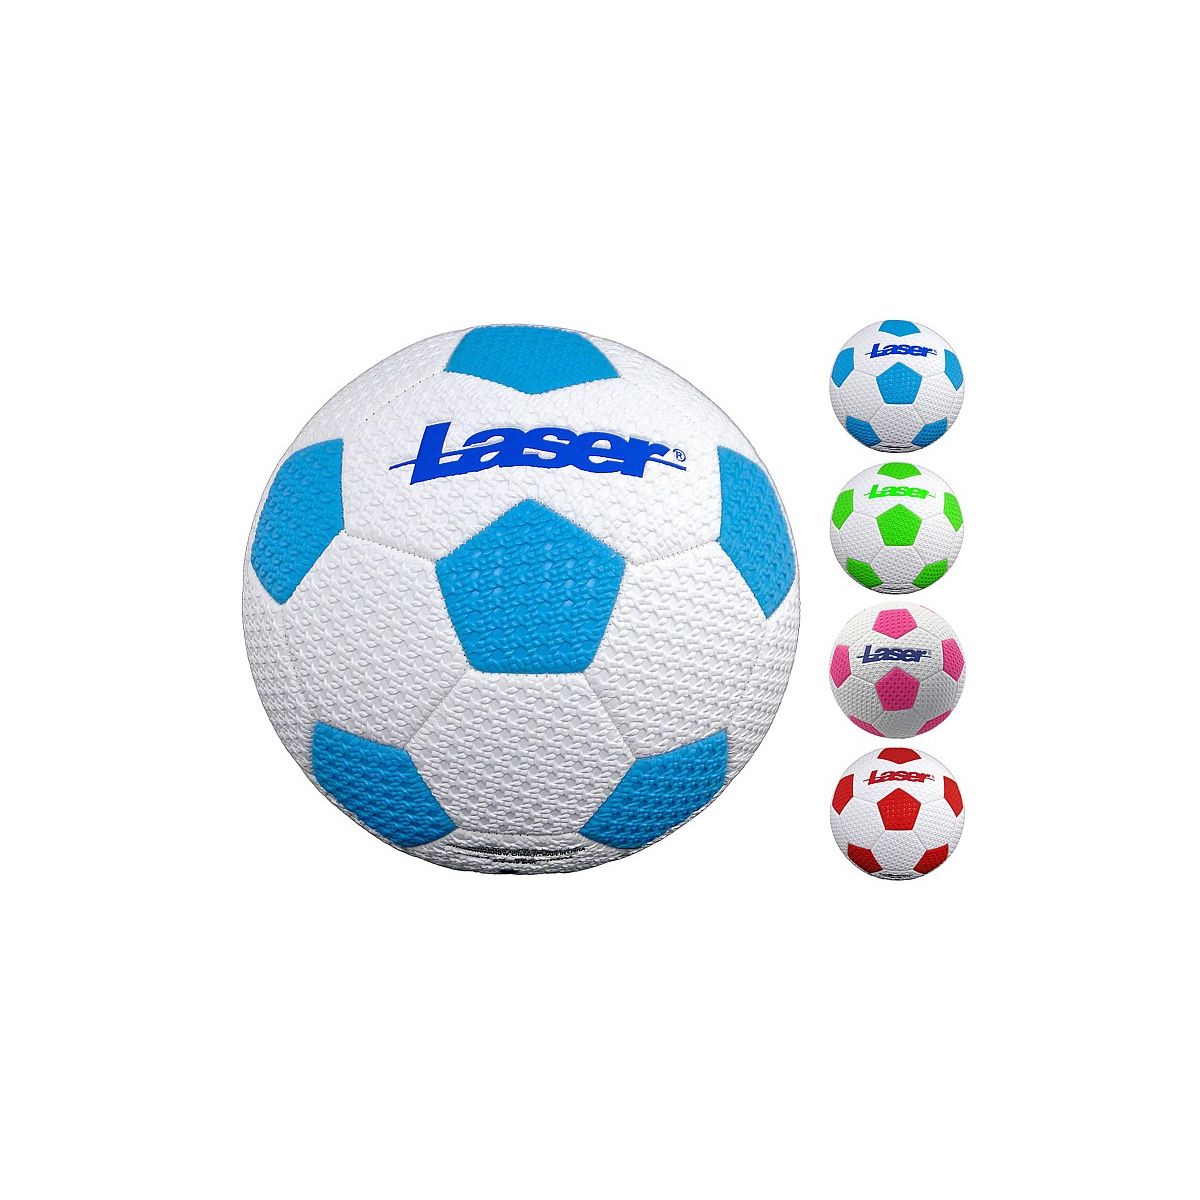 Piłka nożna Laser z porowatą strukturą Adar (537170)